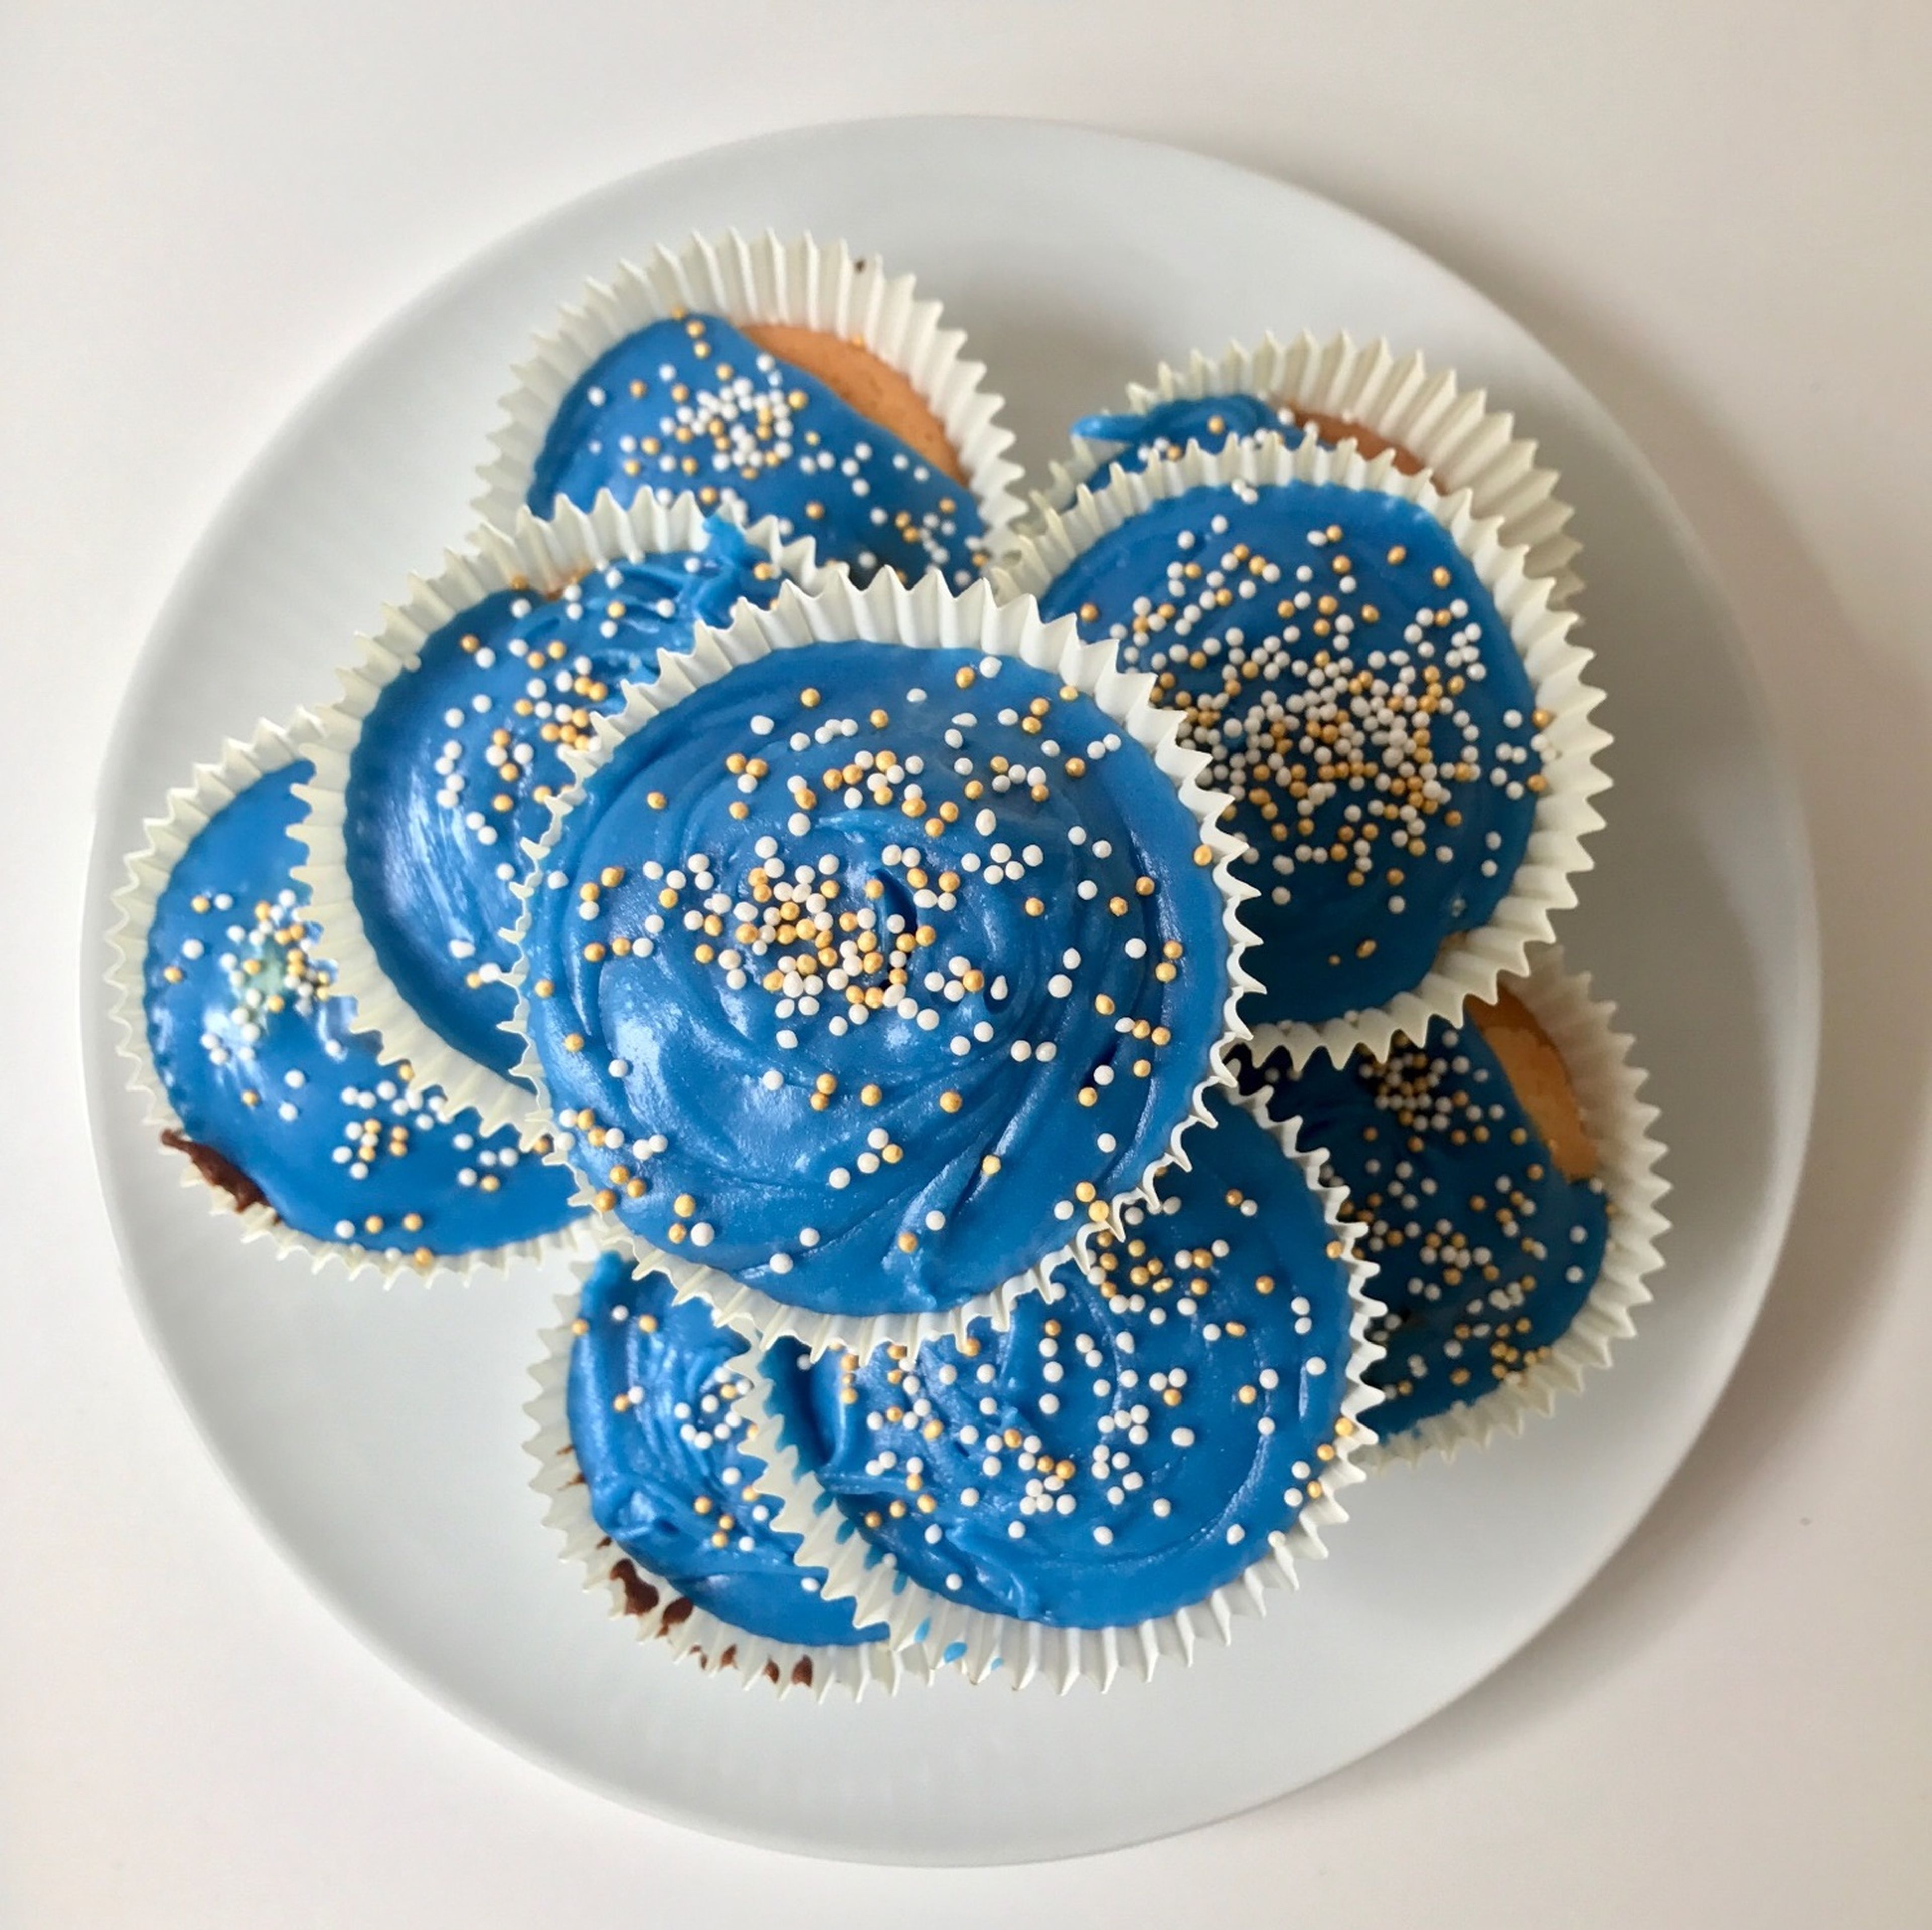 Jam-filled cupcakes